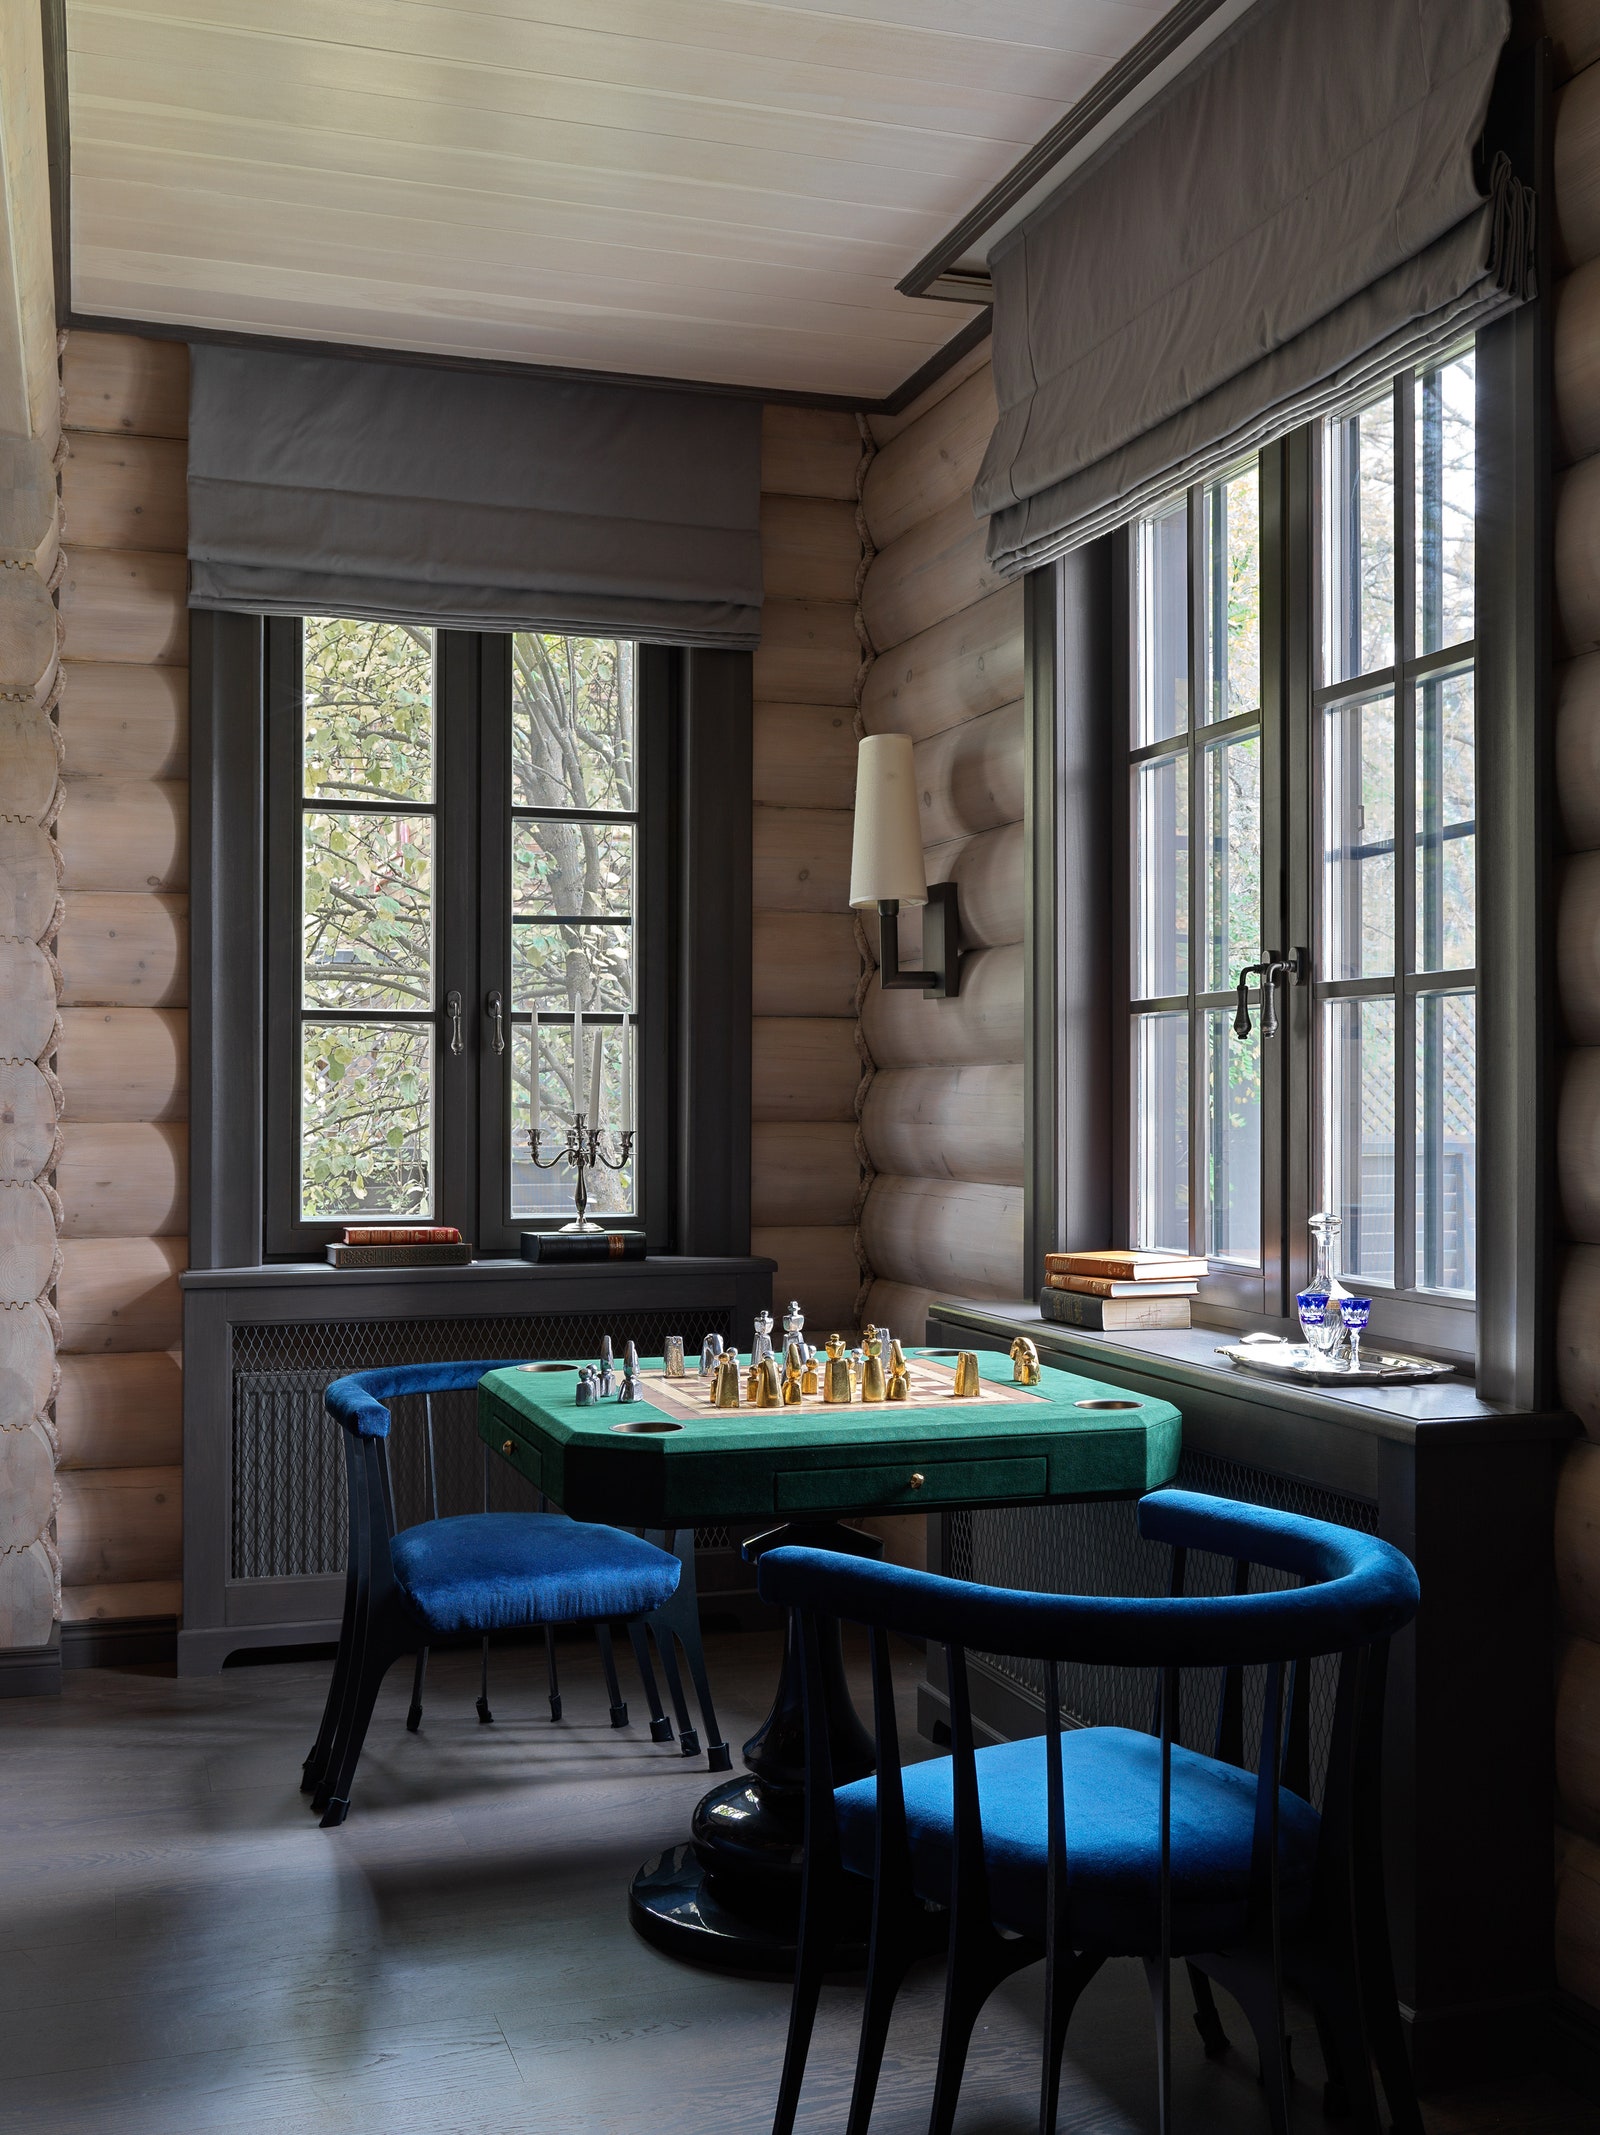 Фрагмент зоны гостиной со столом для игры в шахматы и нарды. Ножка стола выполнена в форме пешки Liberty Design стулья...